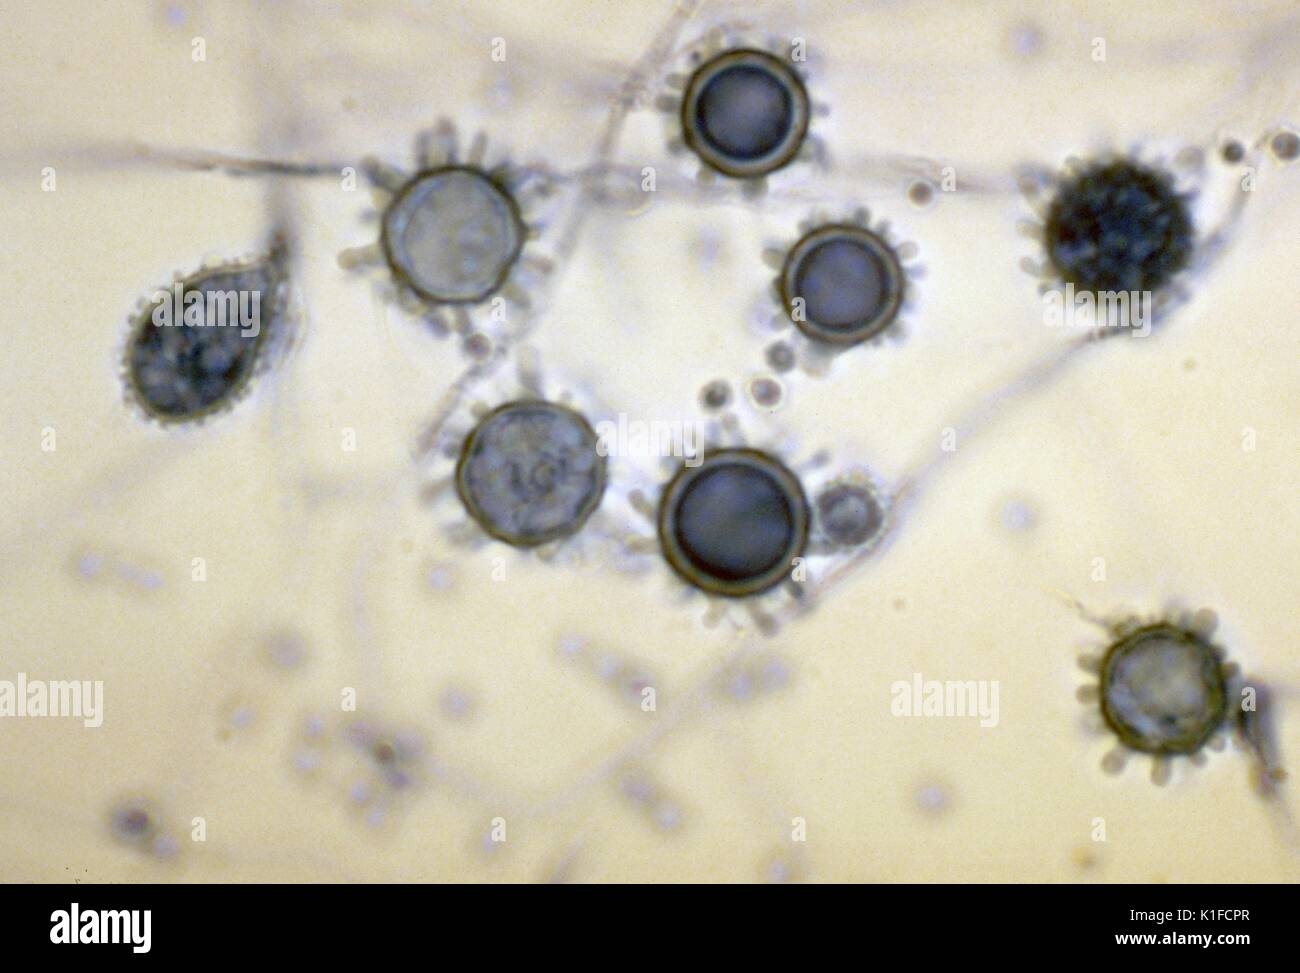 Asexuell Sporen (konidien): tuberculate macroconidia von Histoplasma capsulatum. Microconidia sind ebenfalls vorhanden. Mit freundlicher CDC. 1982. Stockfoto